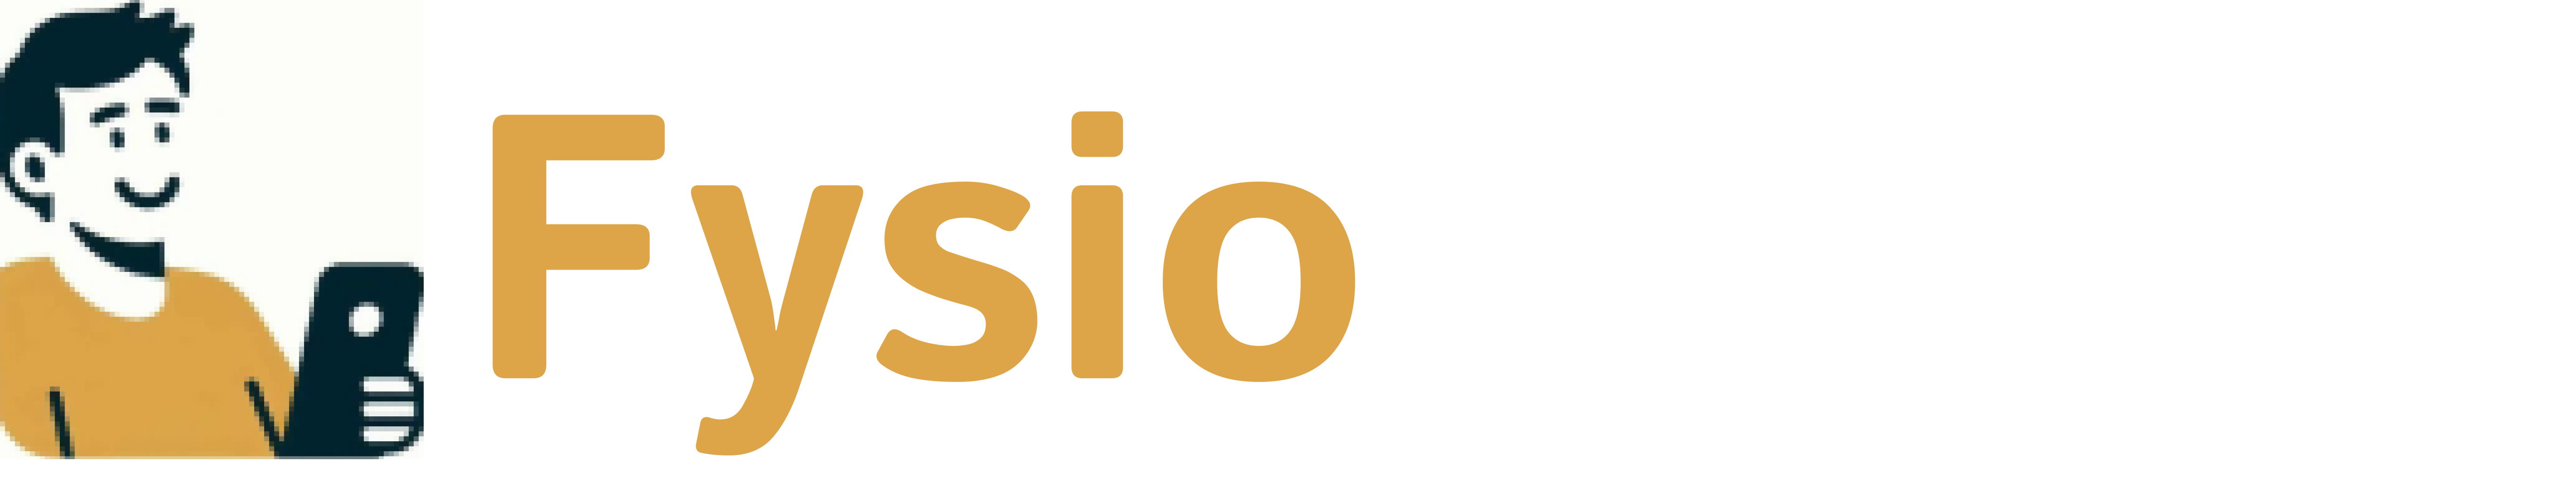 FysioOnlines logo